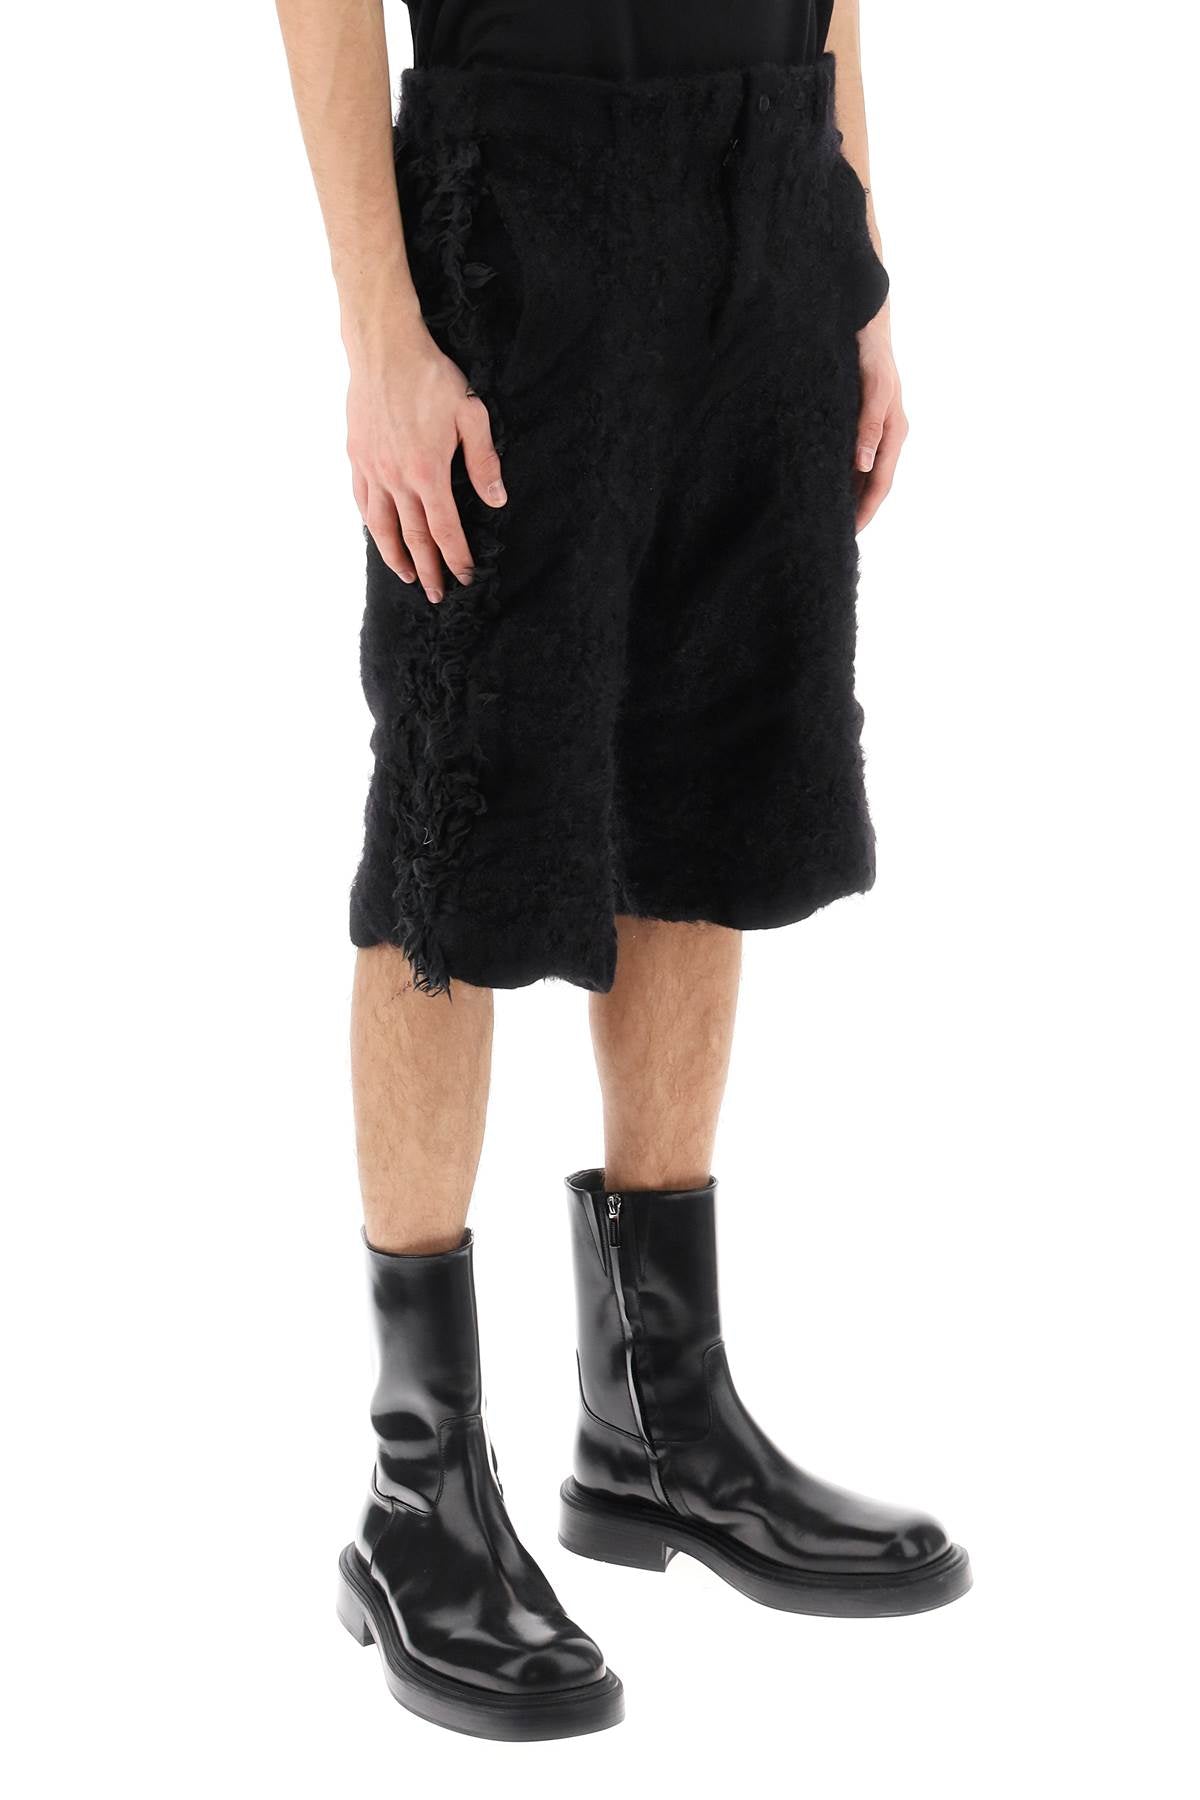 COMME DES GARÇONS HOMME PLUS Luxury Wool Knit Fur-Effect Shorts for Men - FW23 Collection